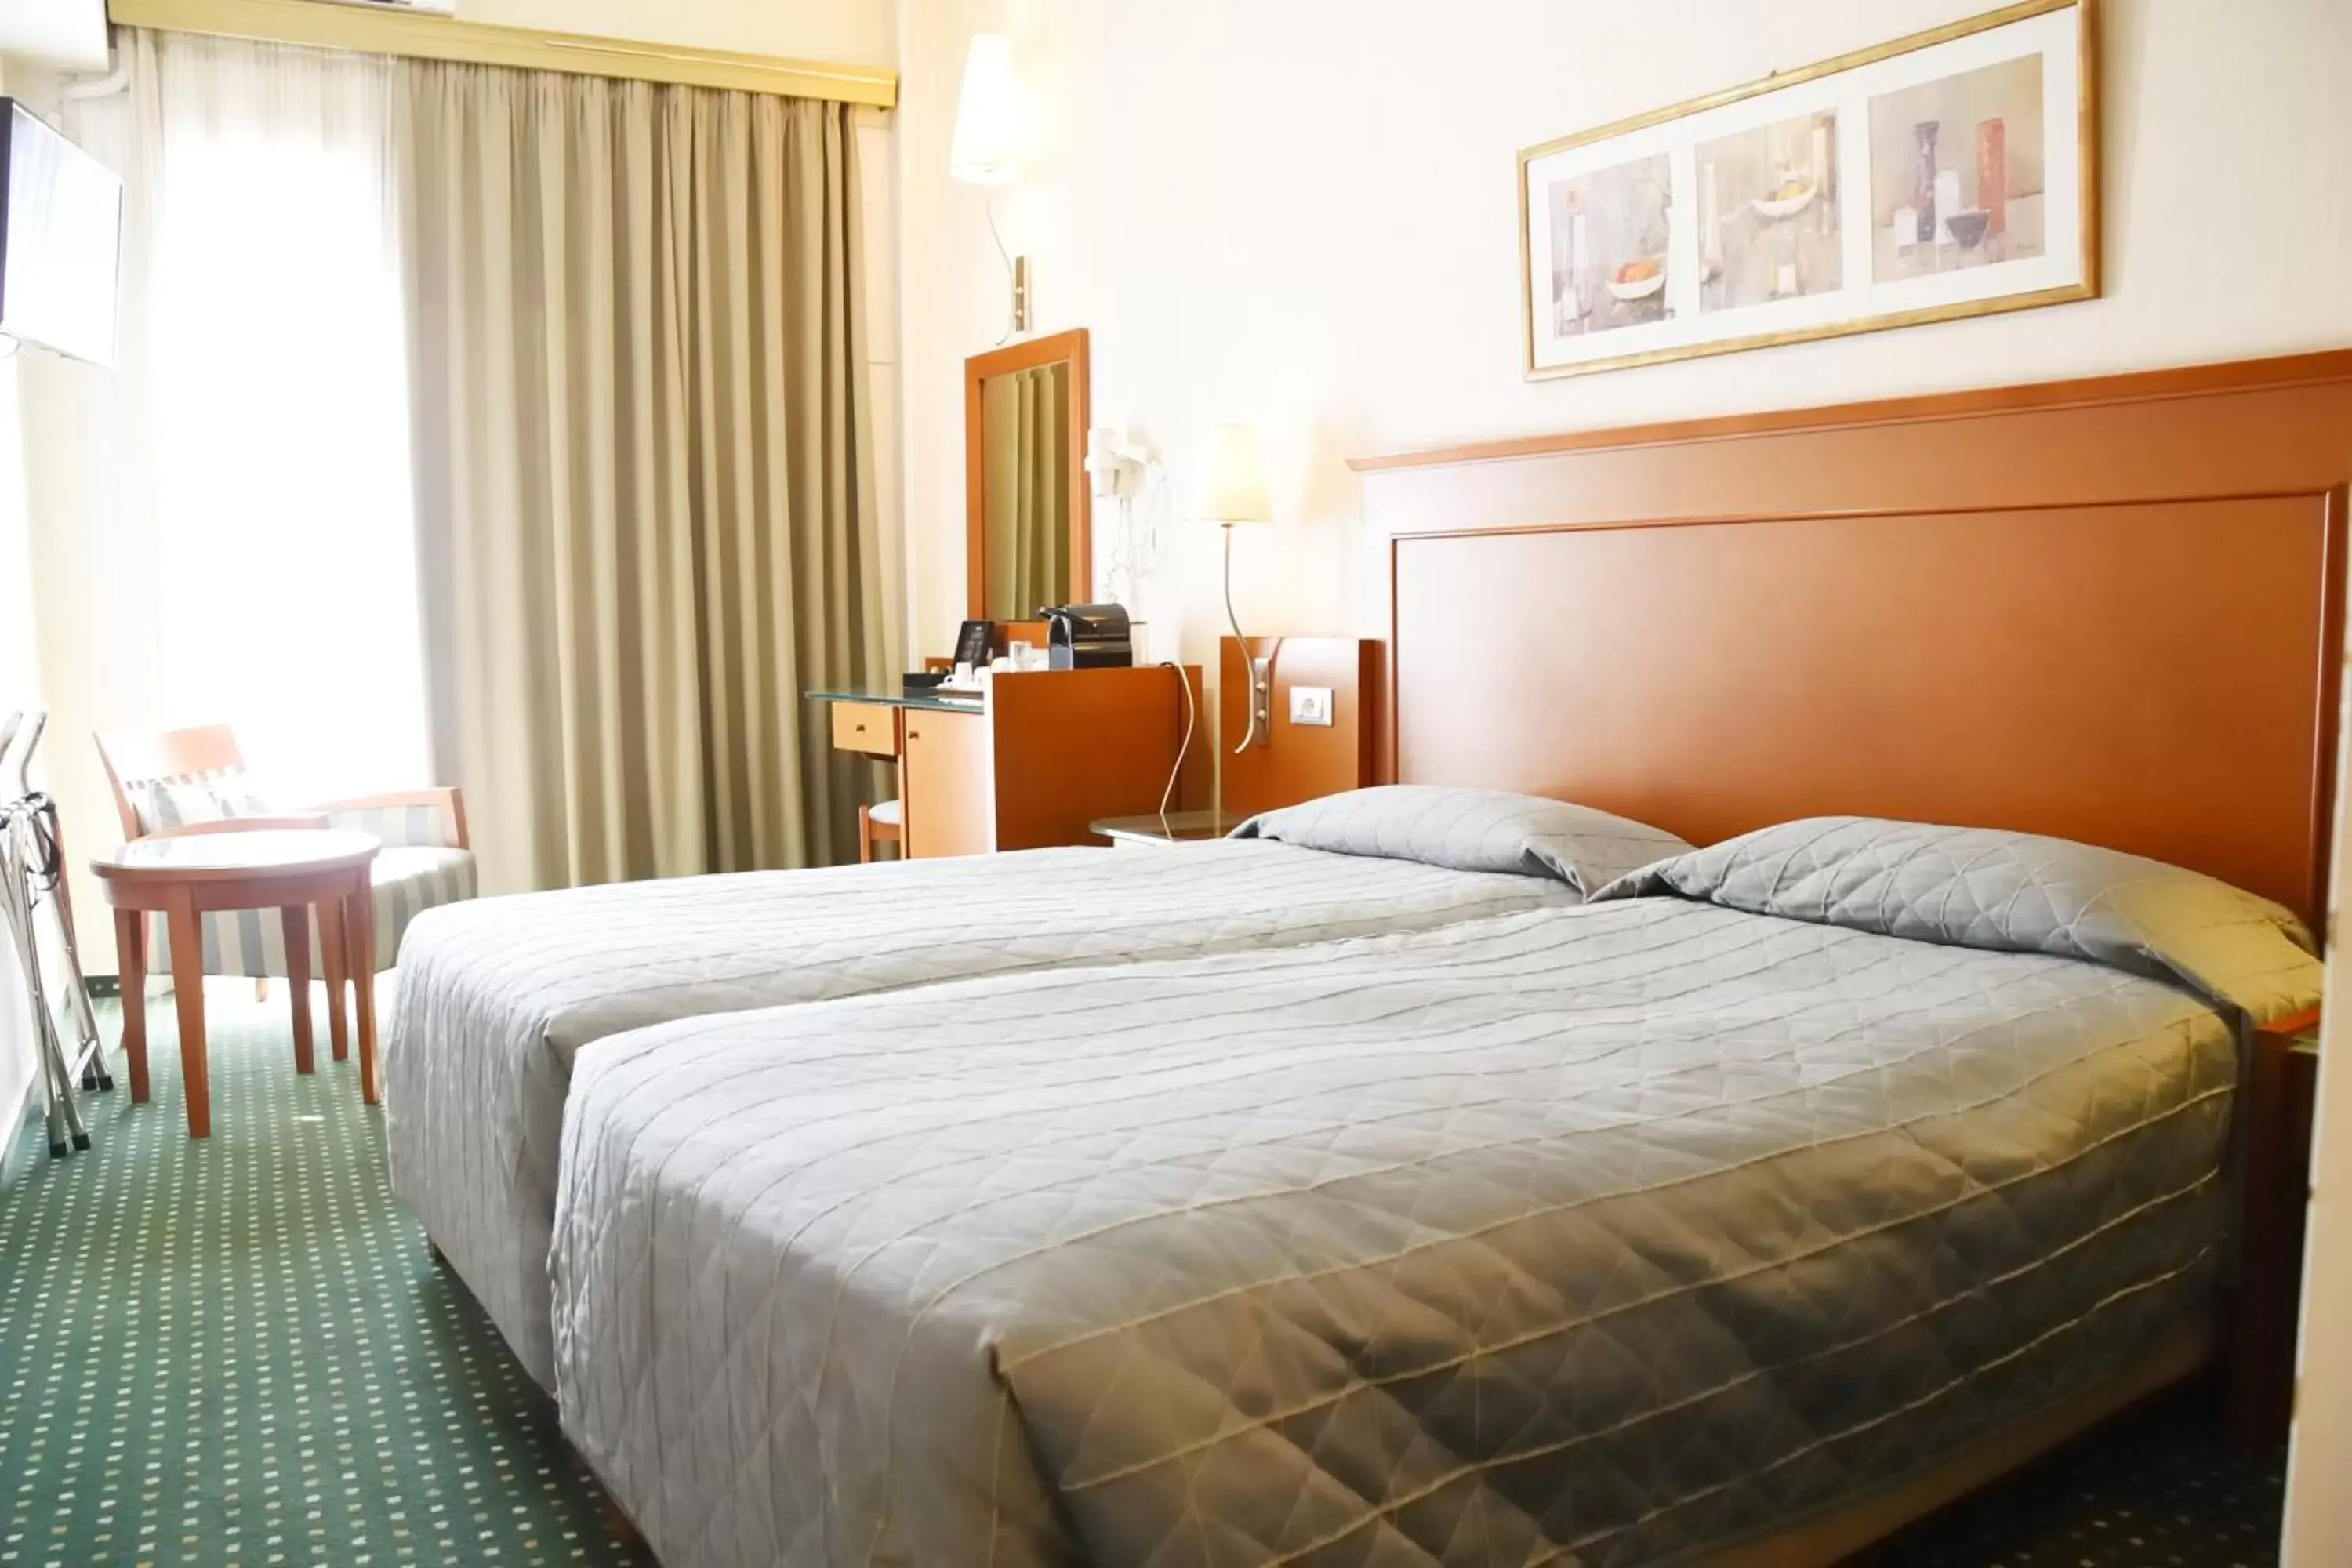 Bedroom, Bed in Adrian Hotel